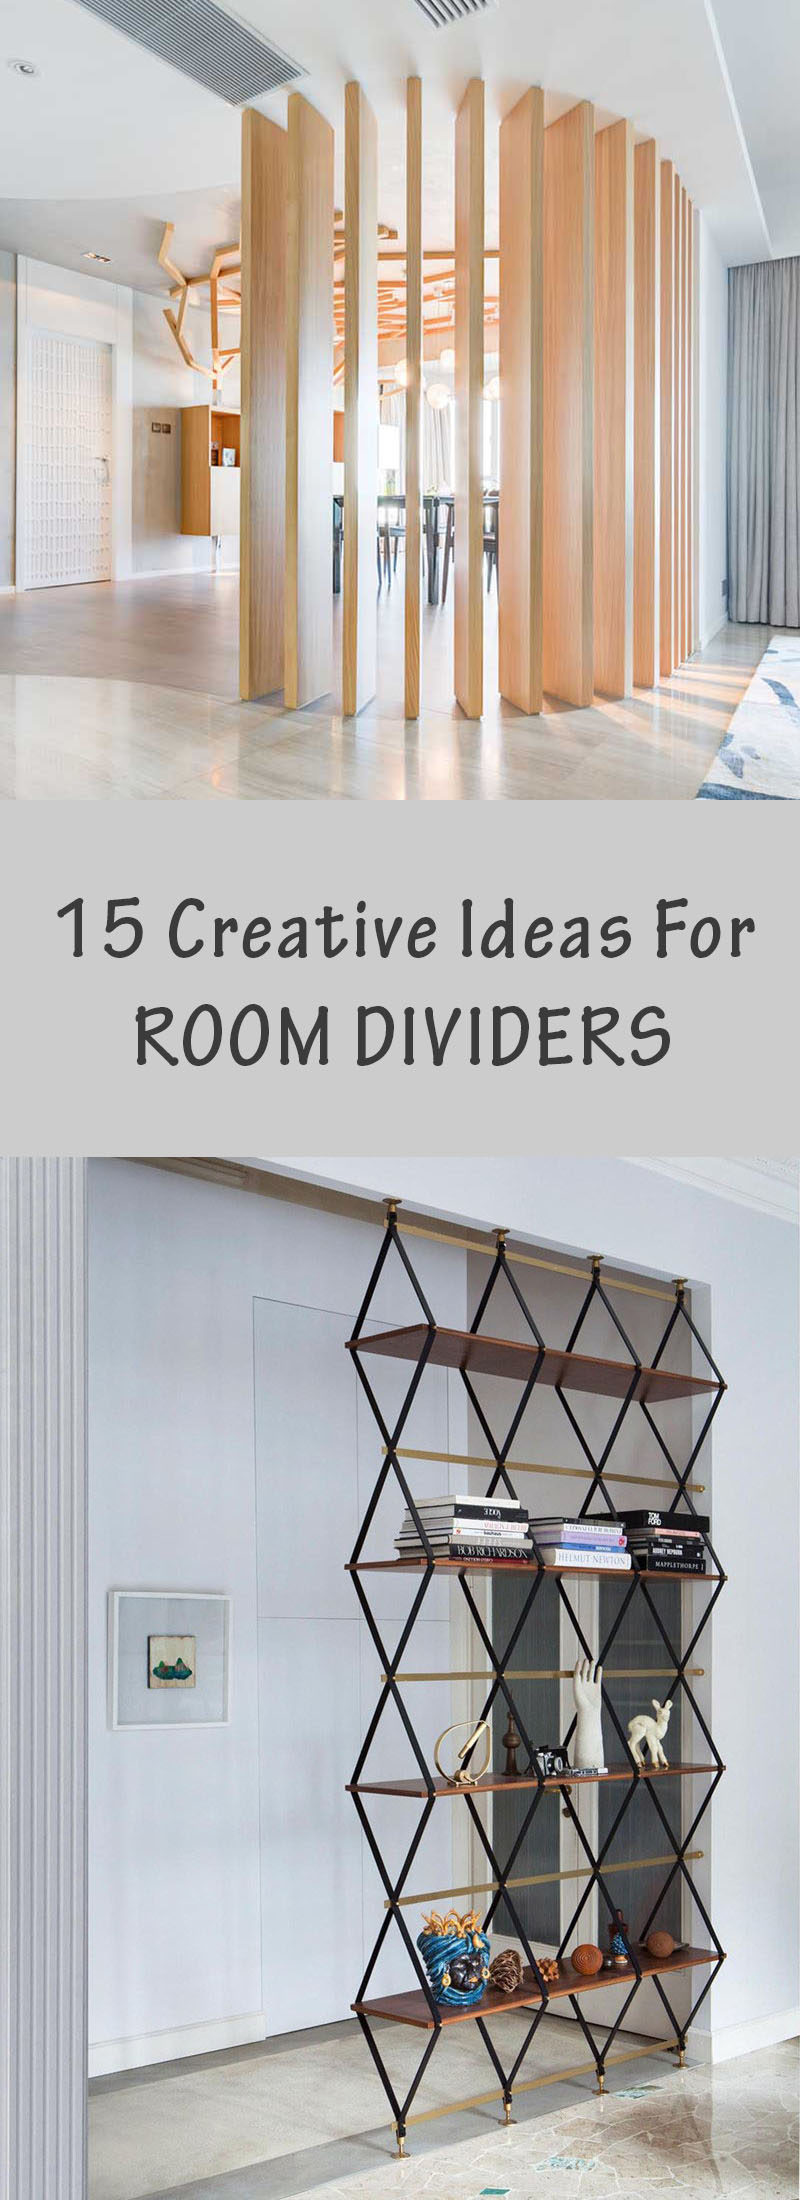 15 креативных идей для перегородок комнаты